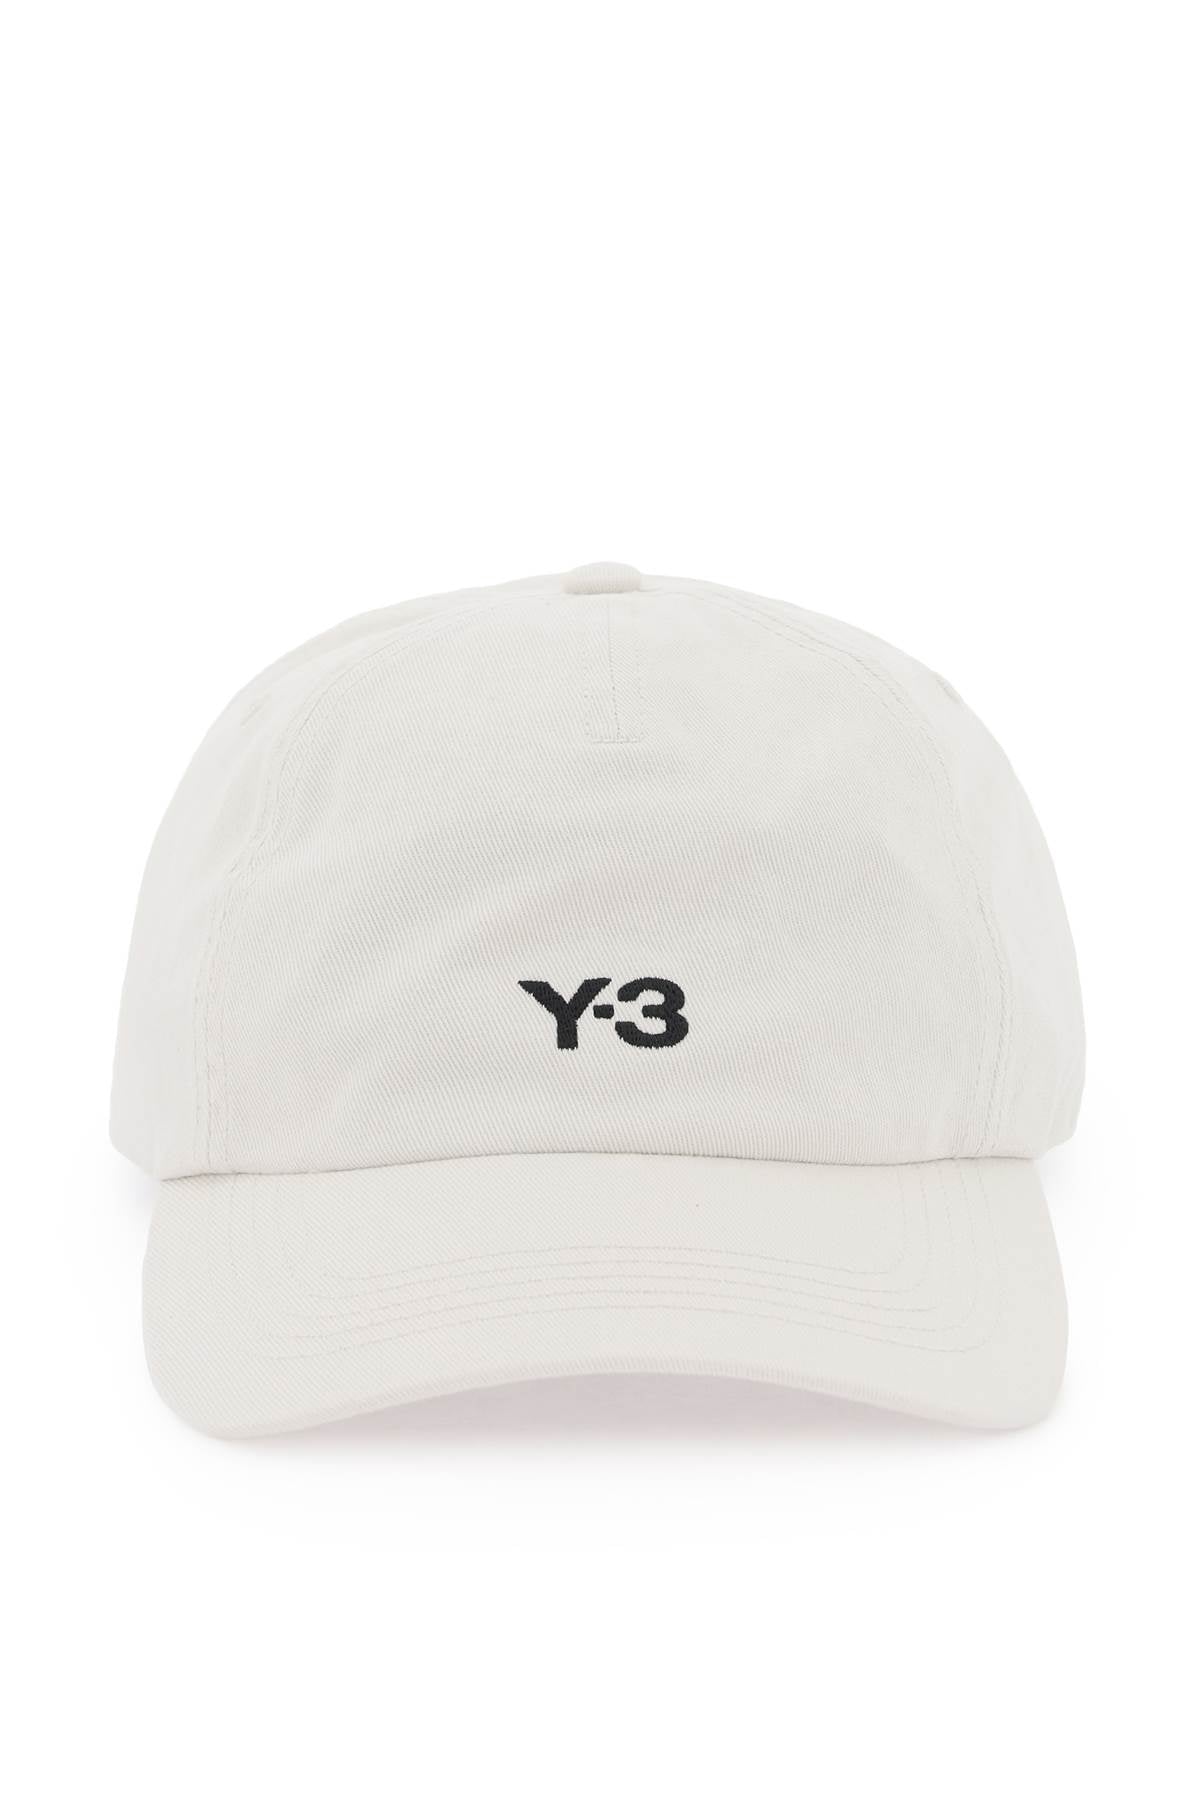 Y-3 Y-3 cappello baseball dad